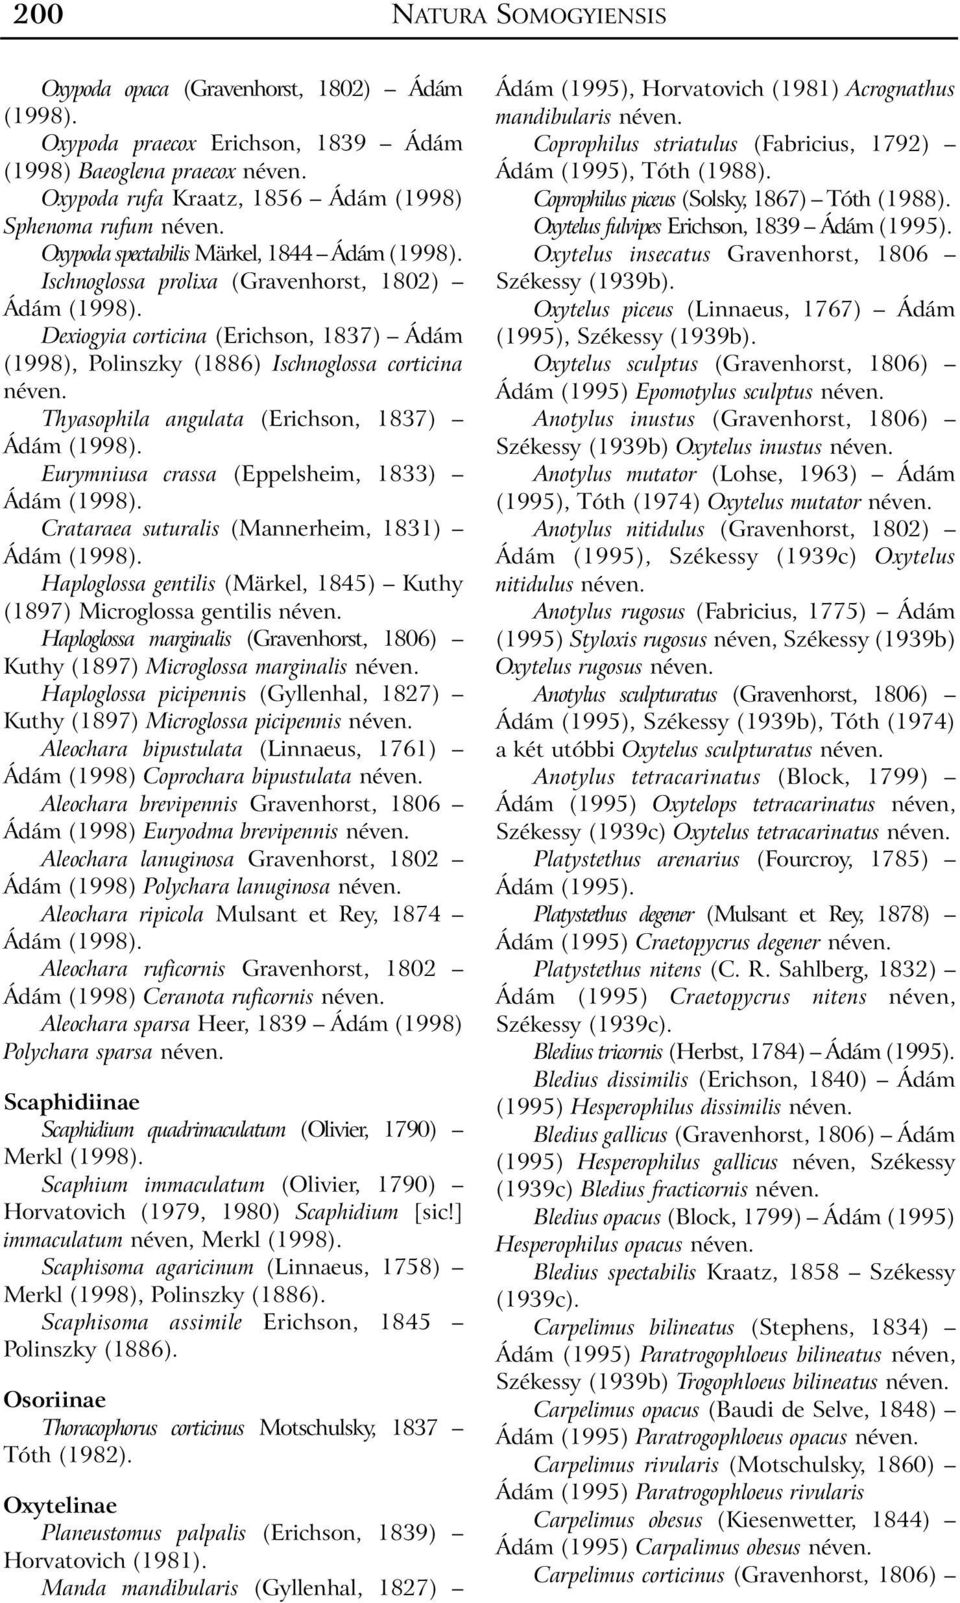 Thyasophila angulata (Erichson, 1837) Ádám Eurymniusa crassa (Eppelsheim, 1833) Ádám Crataraea suturalis (Mannerheim, 1831) Ádám Haploglossa gentilis (Märkel, 1845) Kuthy (1897) Microglossa gentilis